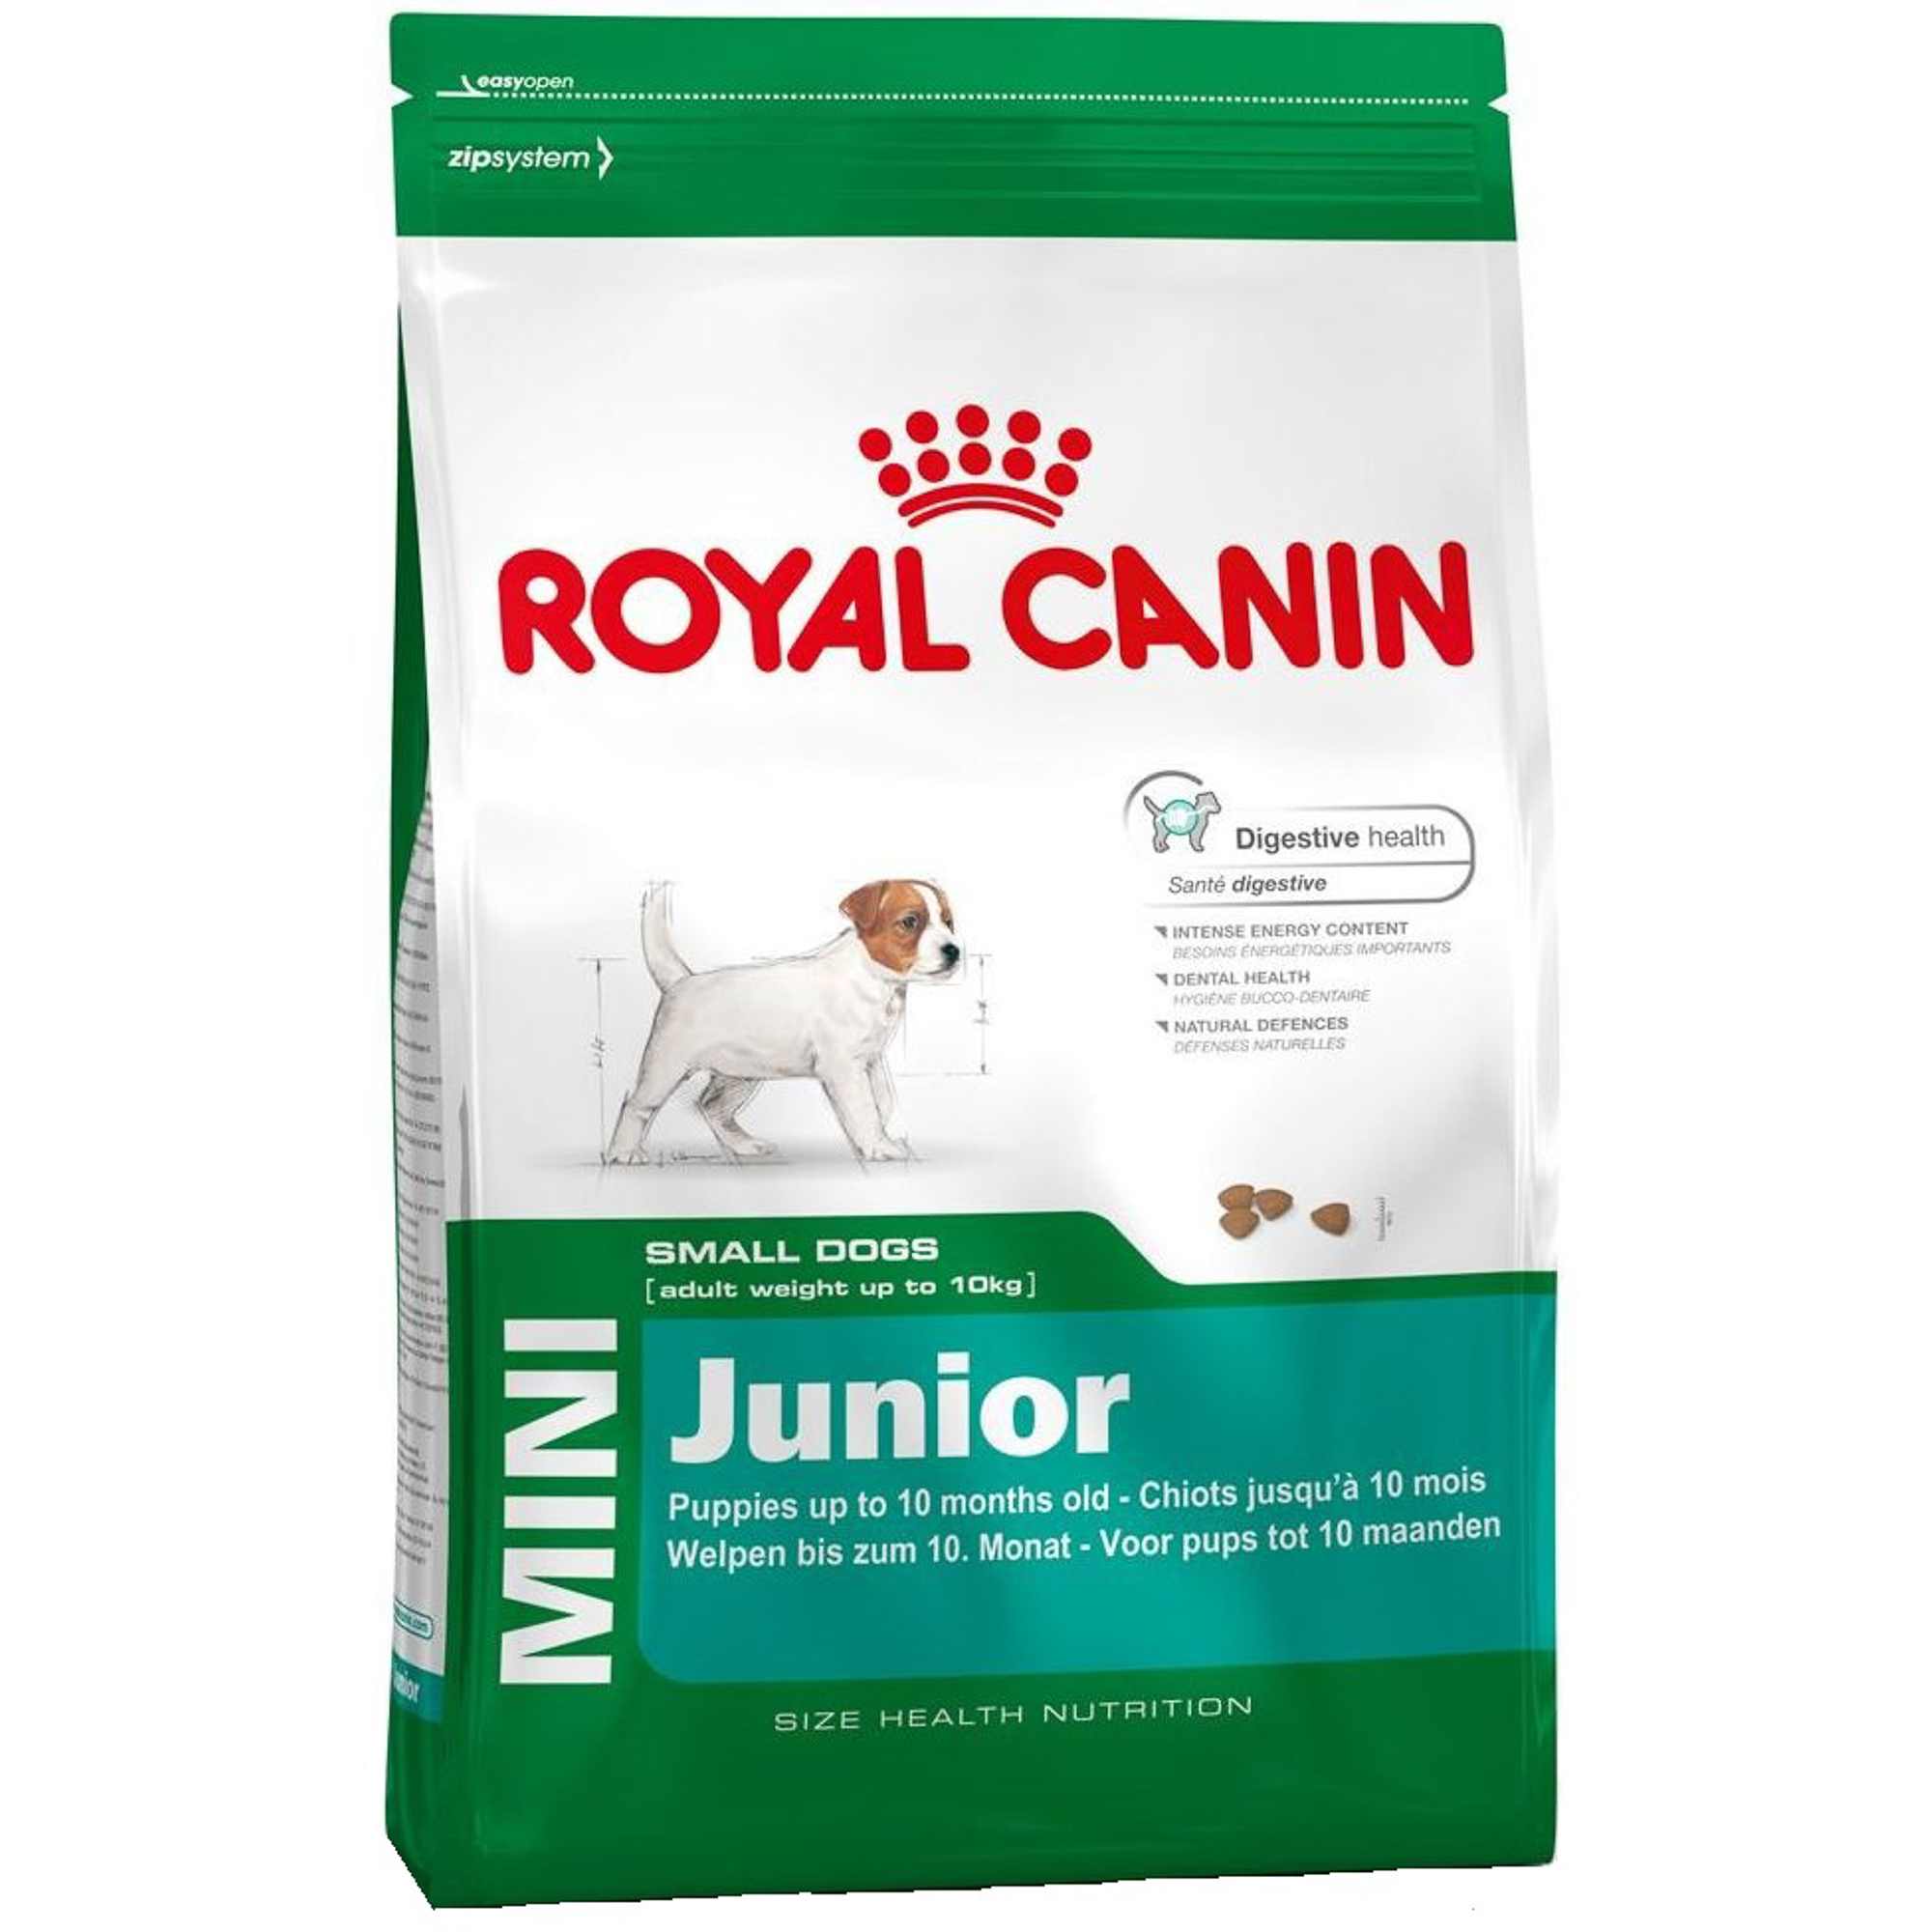 Корм для щенков Royal Canin JUNIOR для мелких пород, с 2 до 10 месяцев, 2 кг корм для щенков royal canin junior для миниатюрных собак до 10 месяцев 1 5 кг